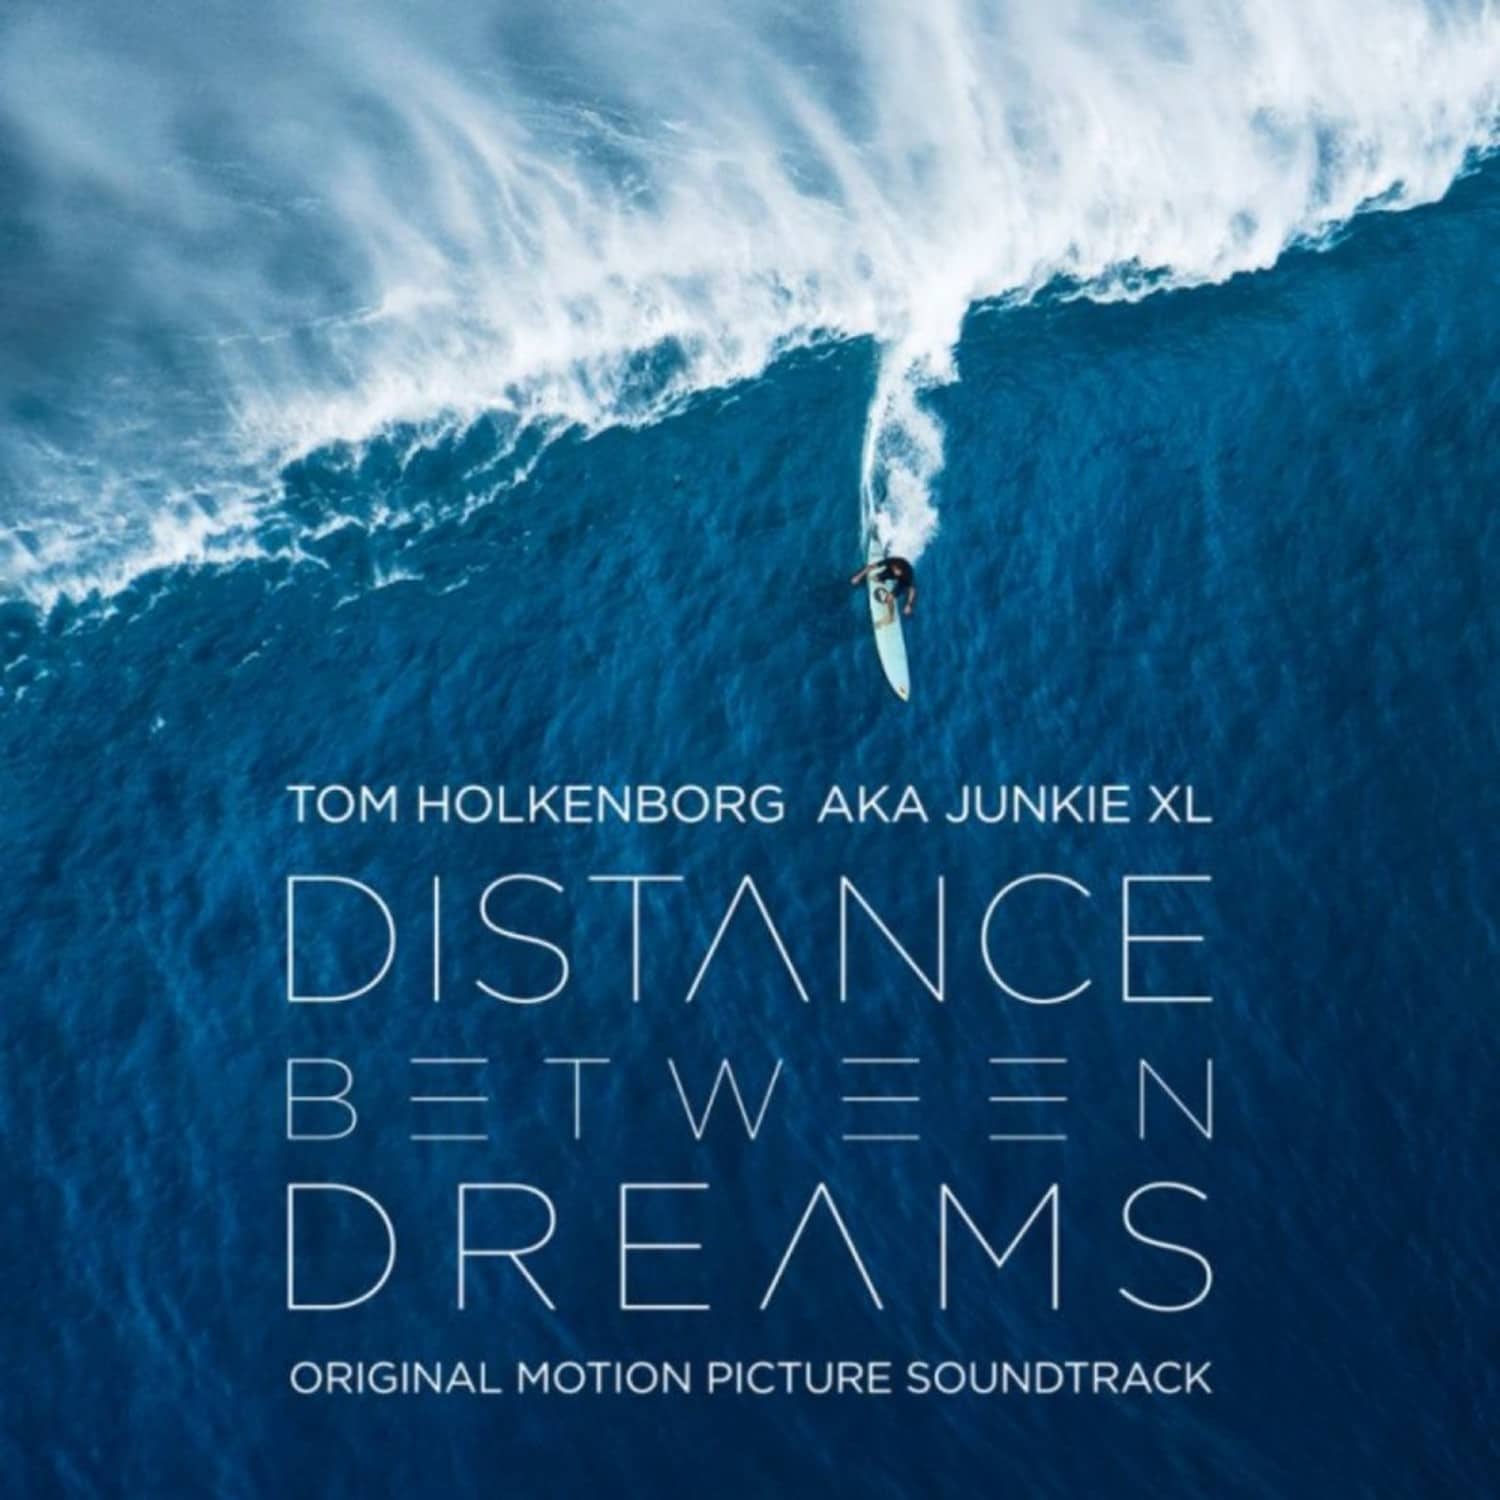 Tom Holkenborg aka Junkie XL - DISTANCE BETWEEN DREAMS 